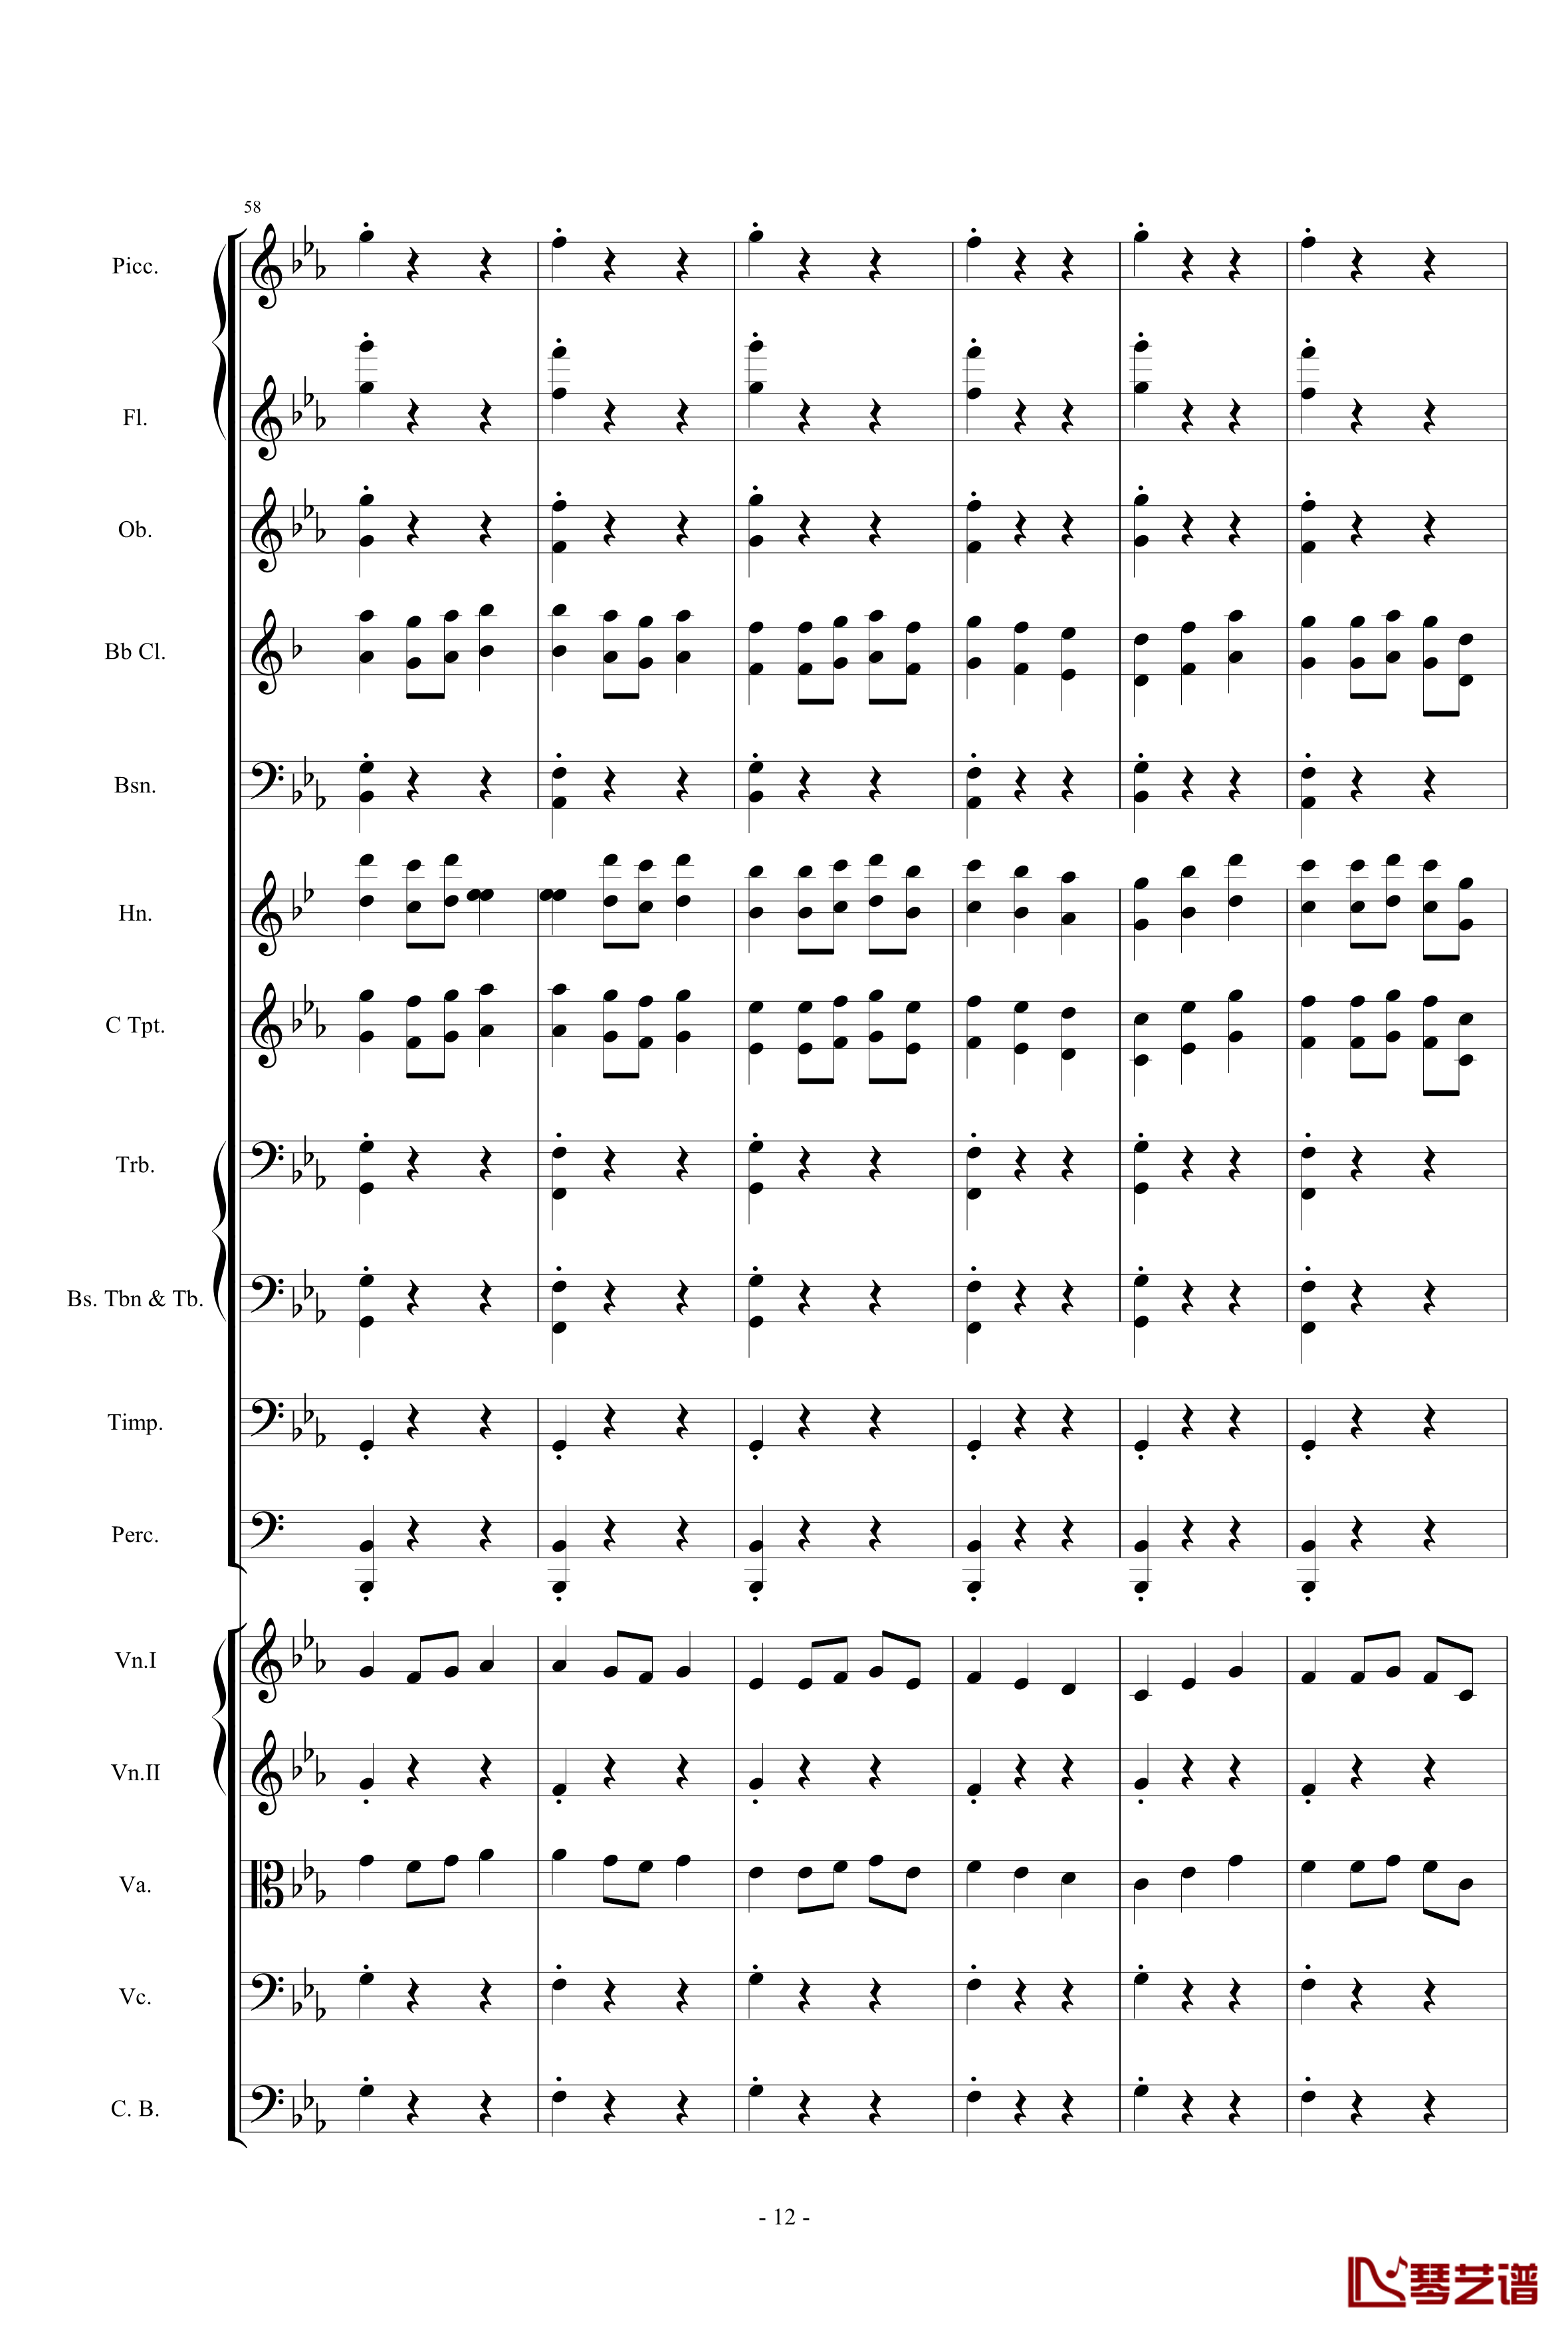 愤怒的小鸟交响曲第三乐章Op.5 no.3钢琴谱-1057257812